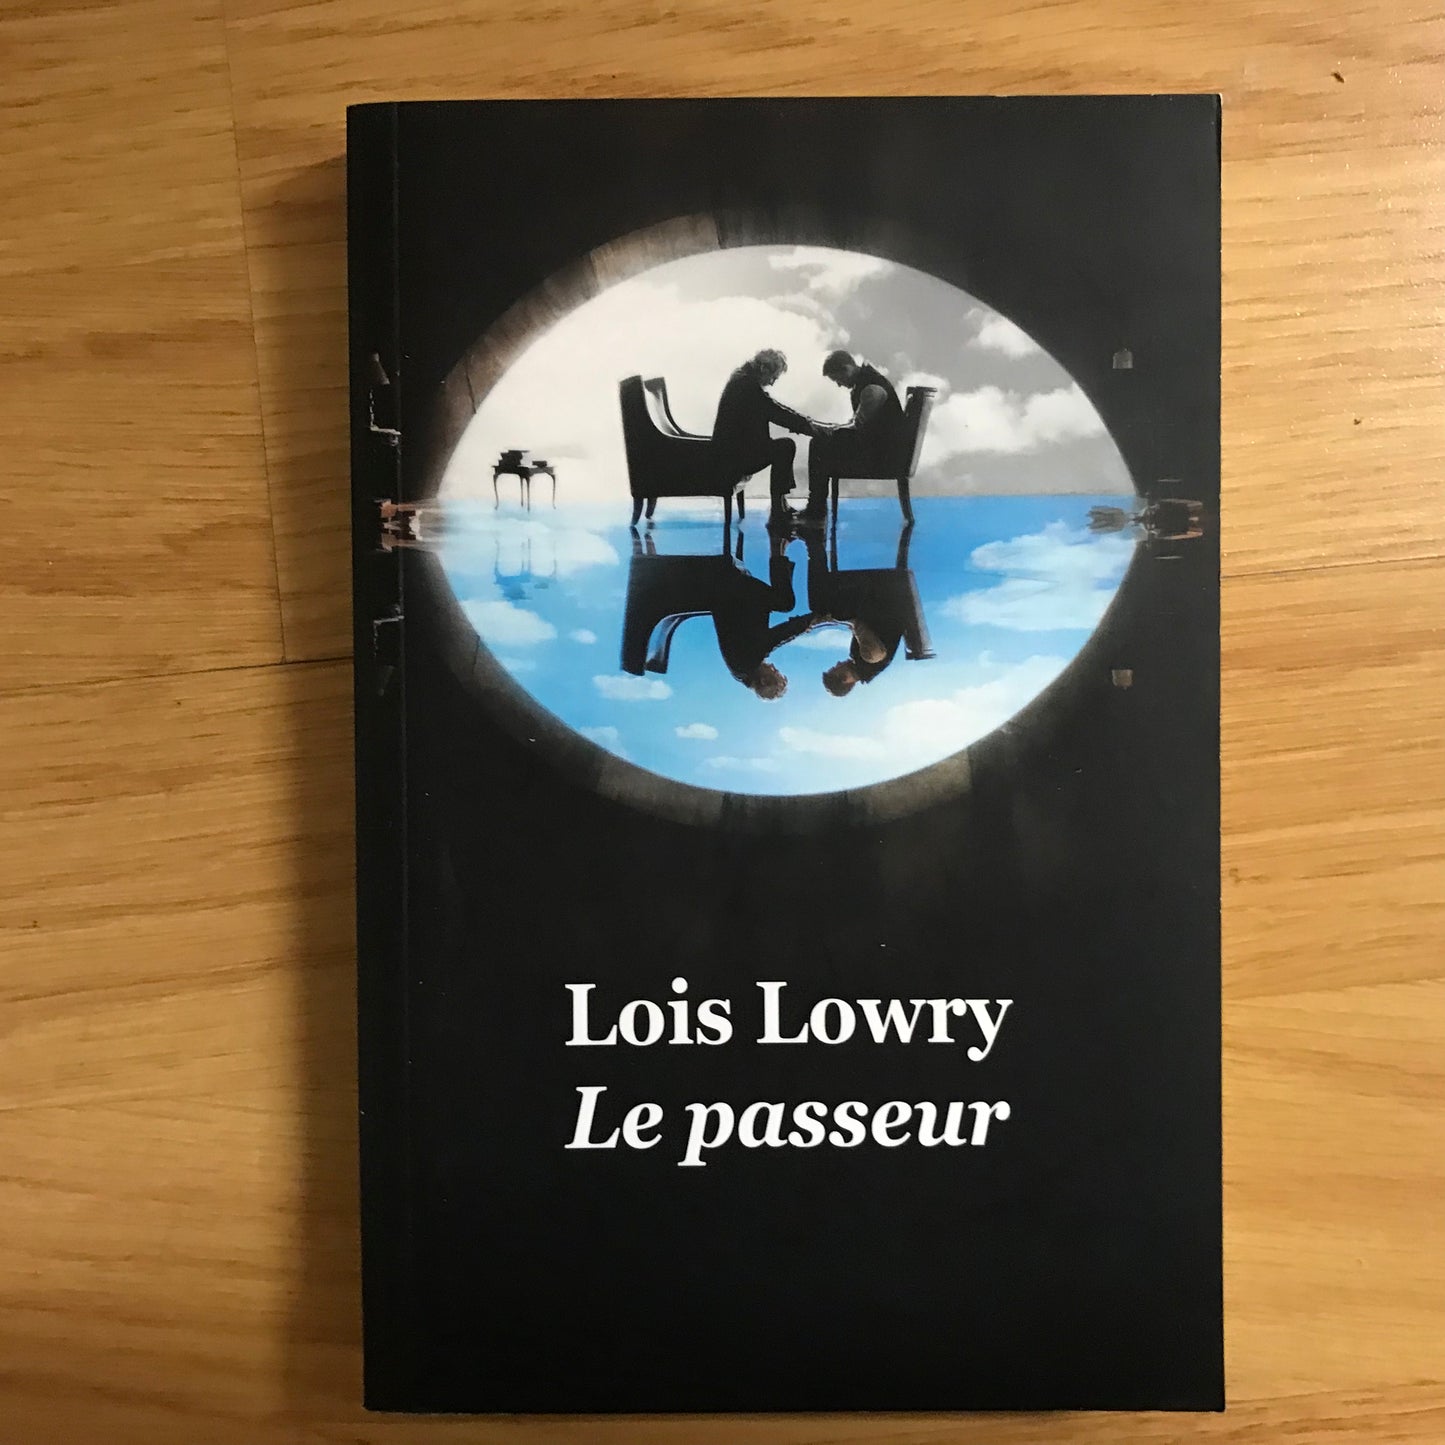 Lowry, Lois - Le passeur